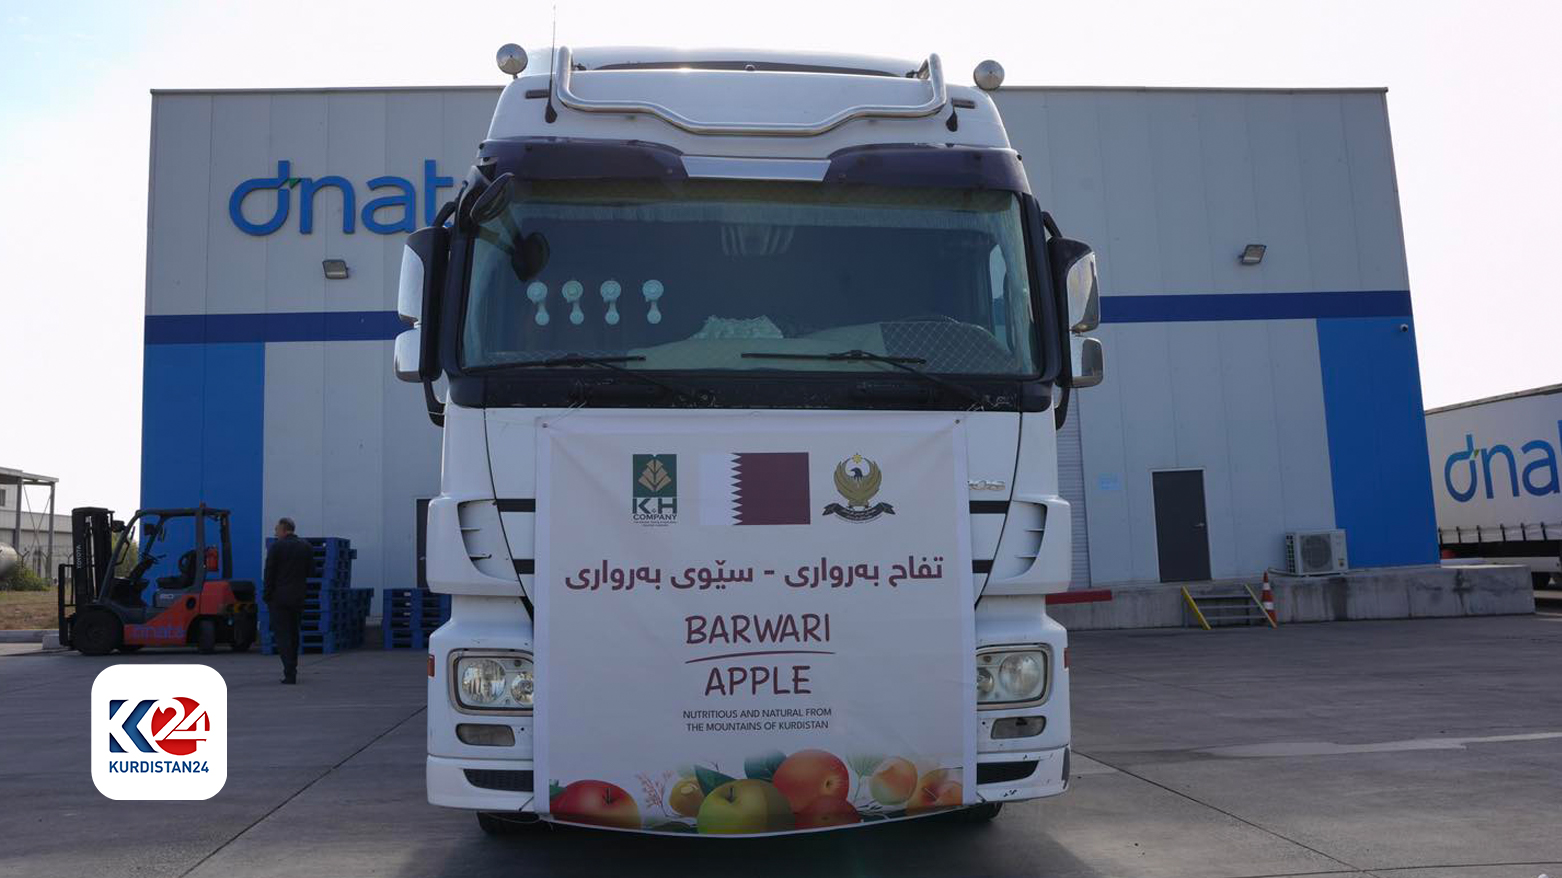 5 ton Berwari elması Katar’a ihraç edildi